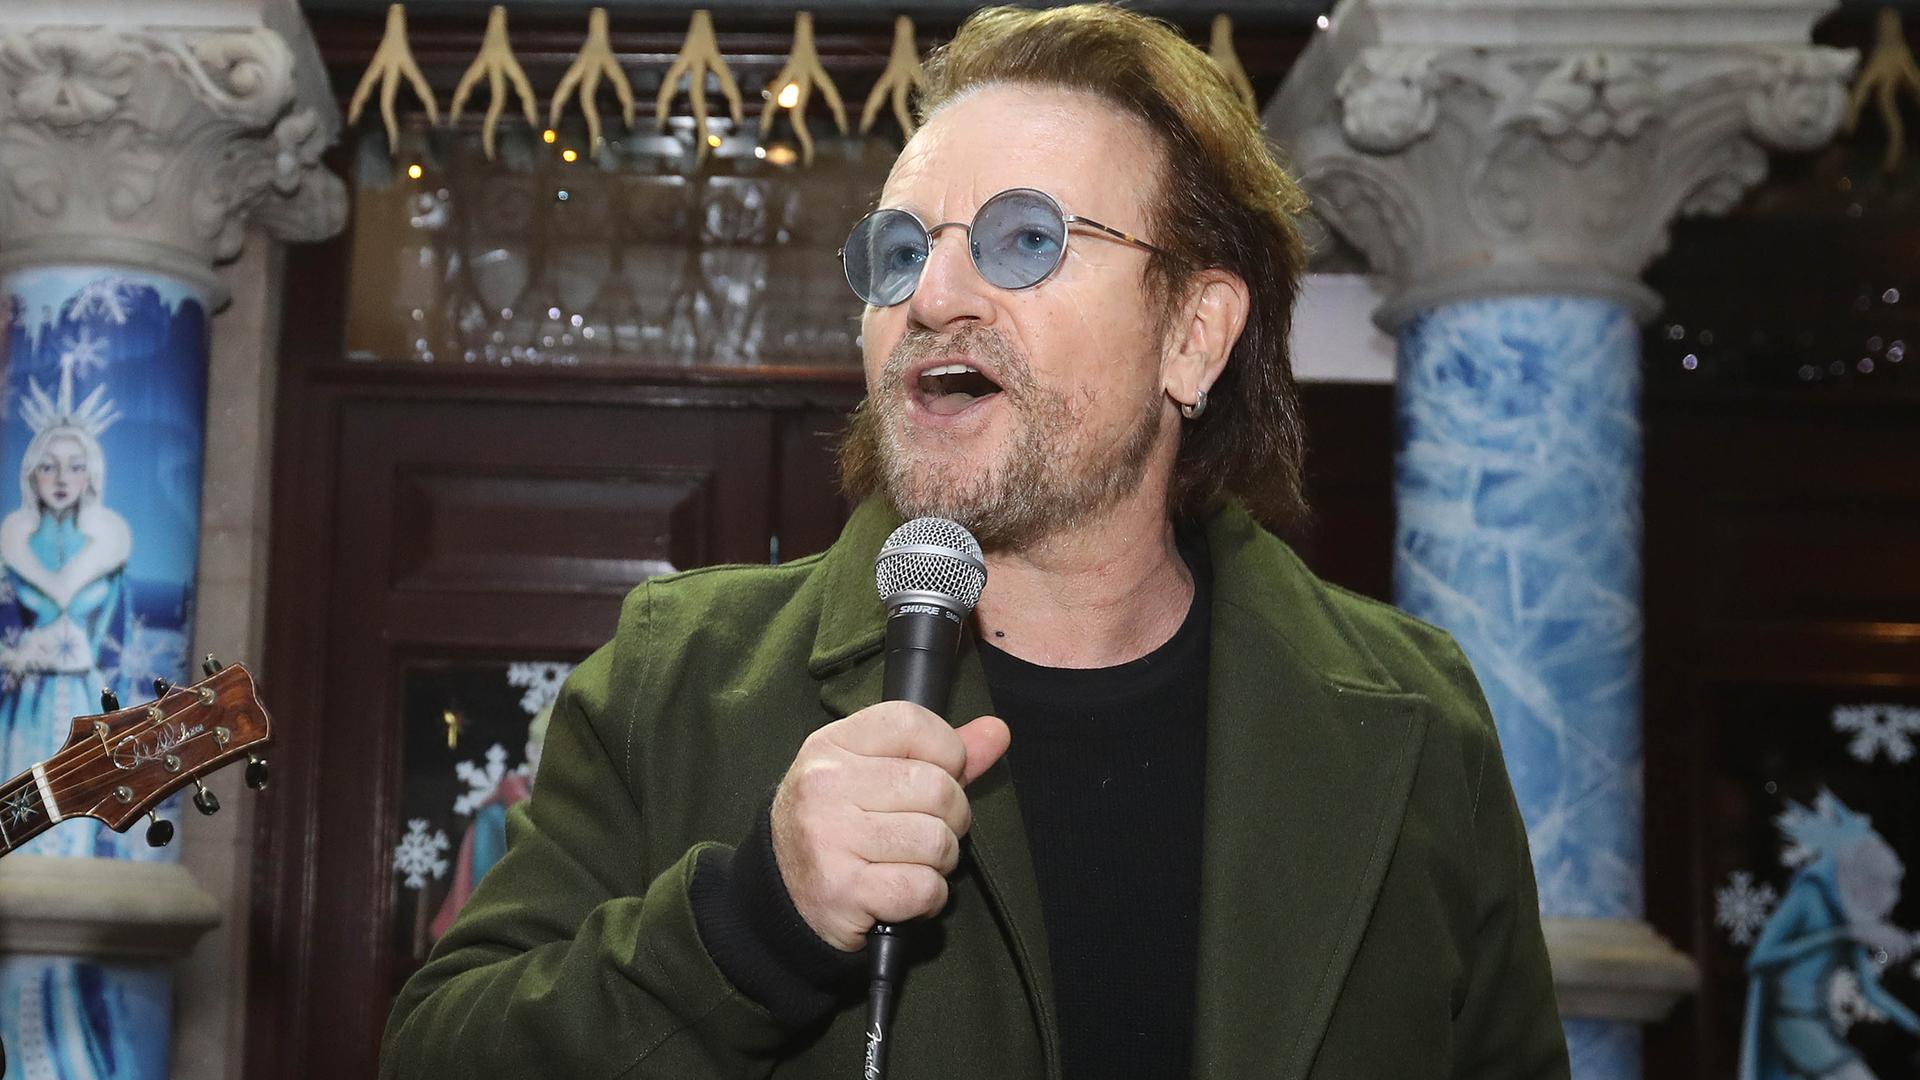 Der irische Sänger und Popstar Bono singt in ein Mikrofon. Er hat einen Drei-Tage-Bart und trägt eine Brille mit bläulich getönten Gläsern.